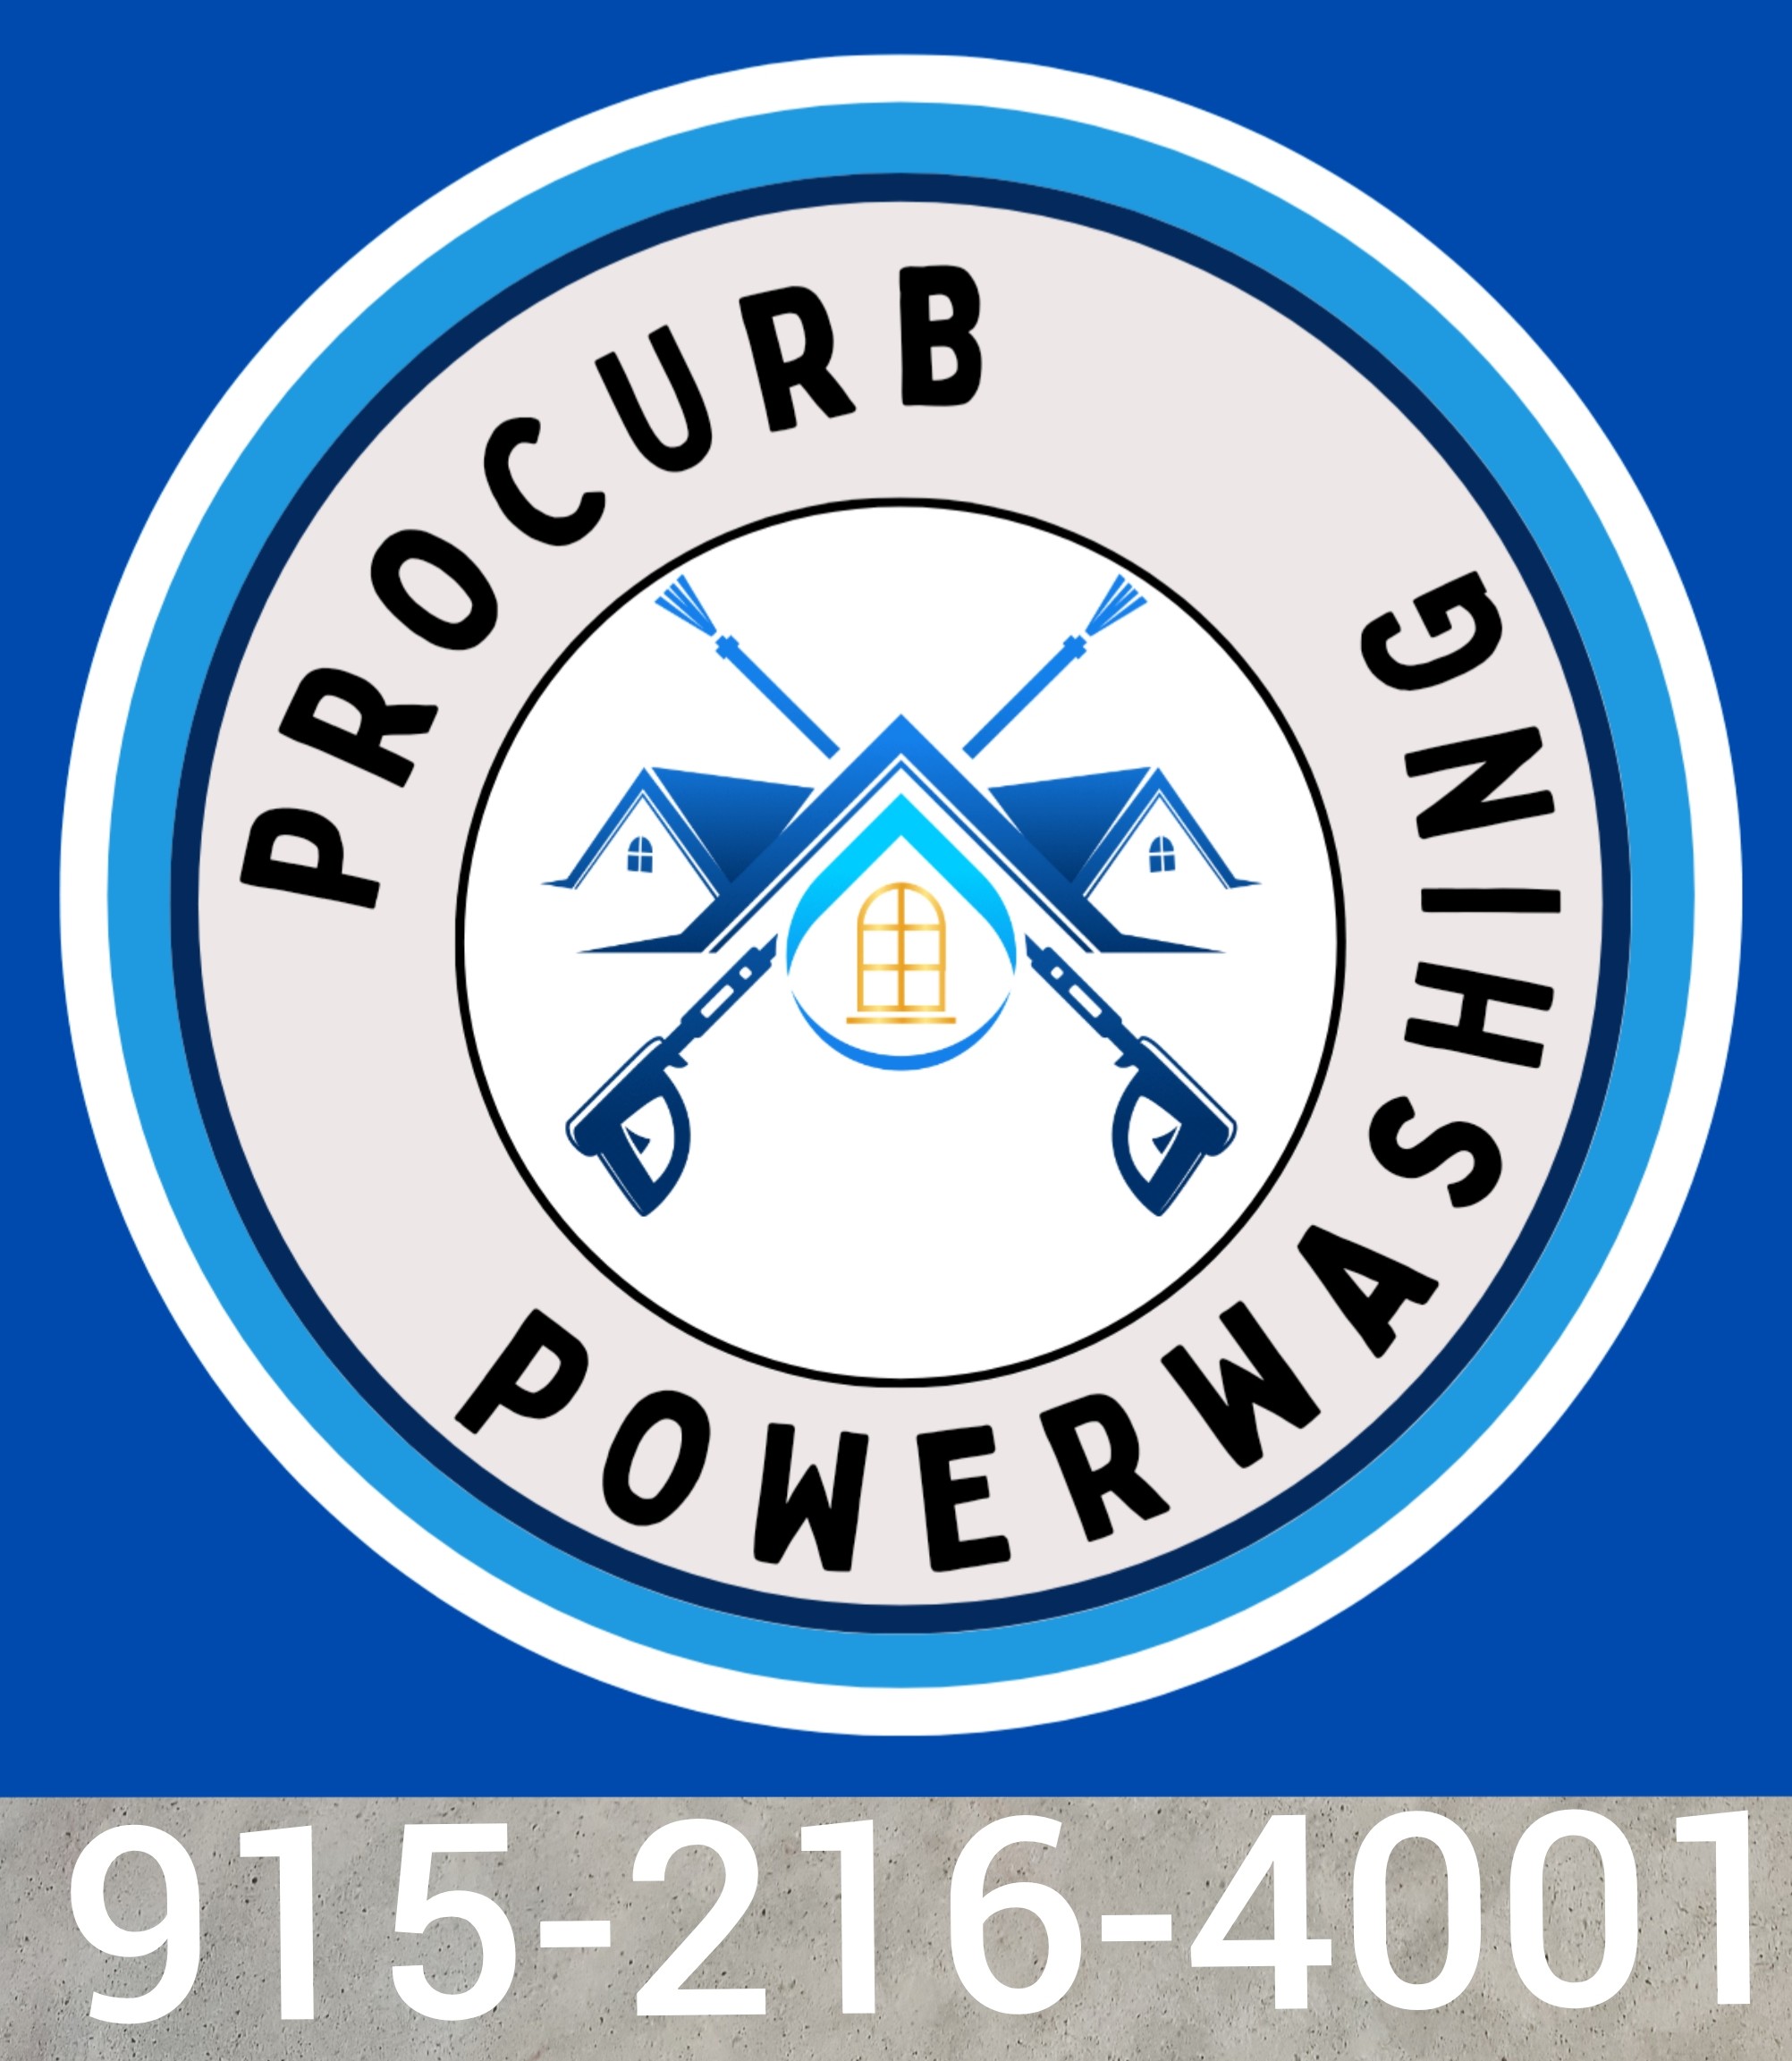 ProCurb Powerwashing Logo